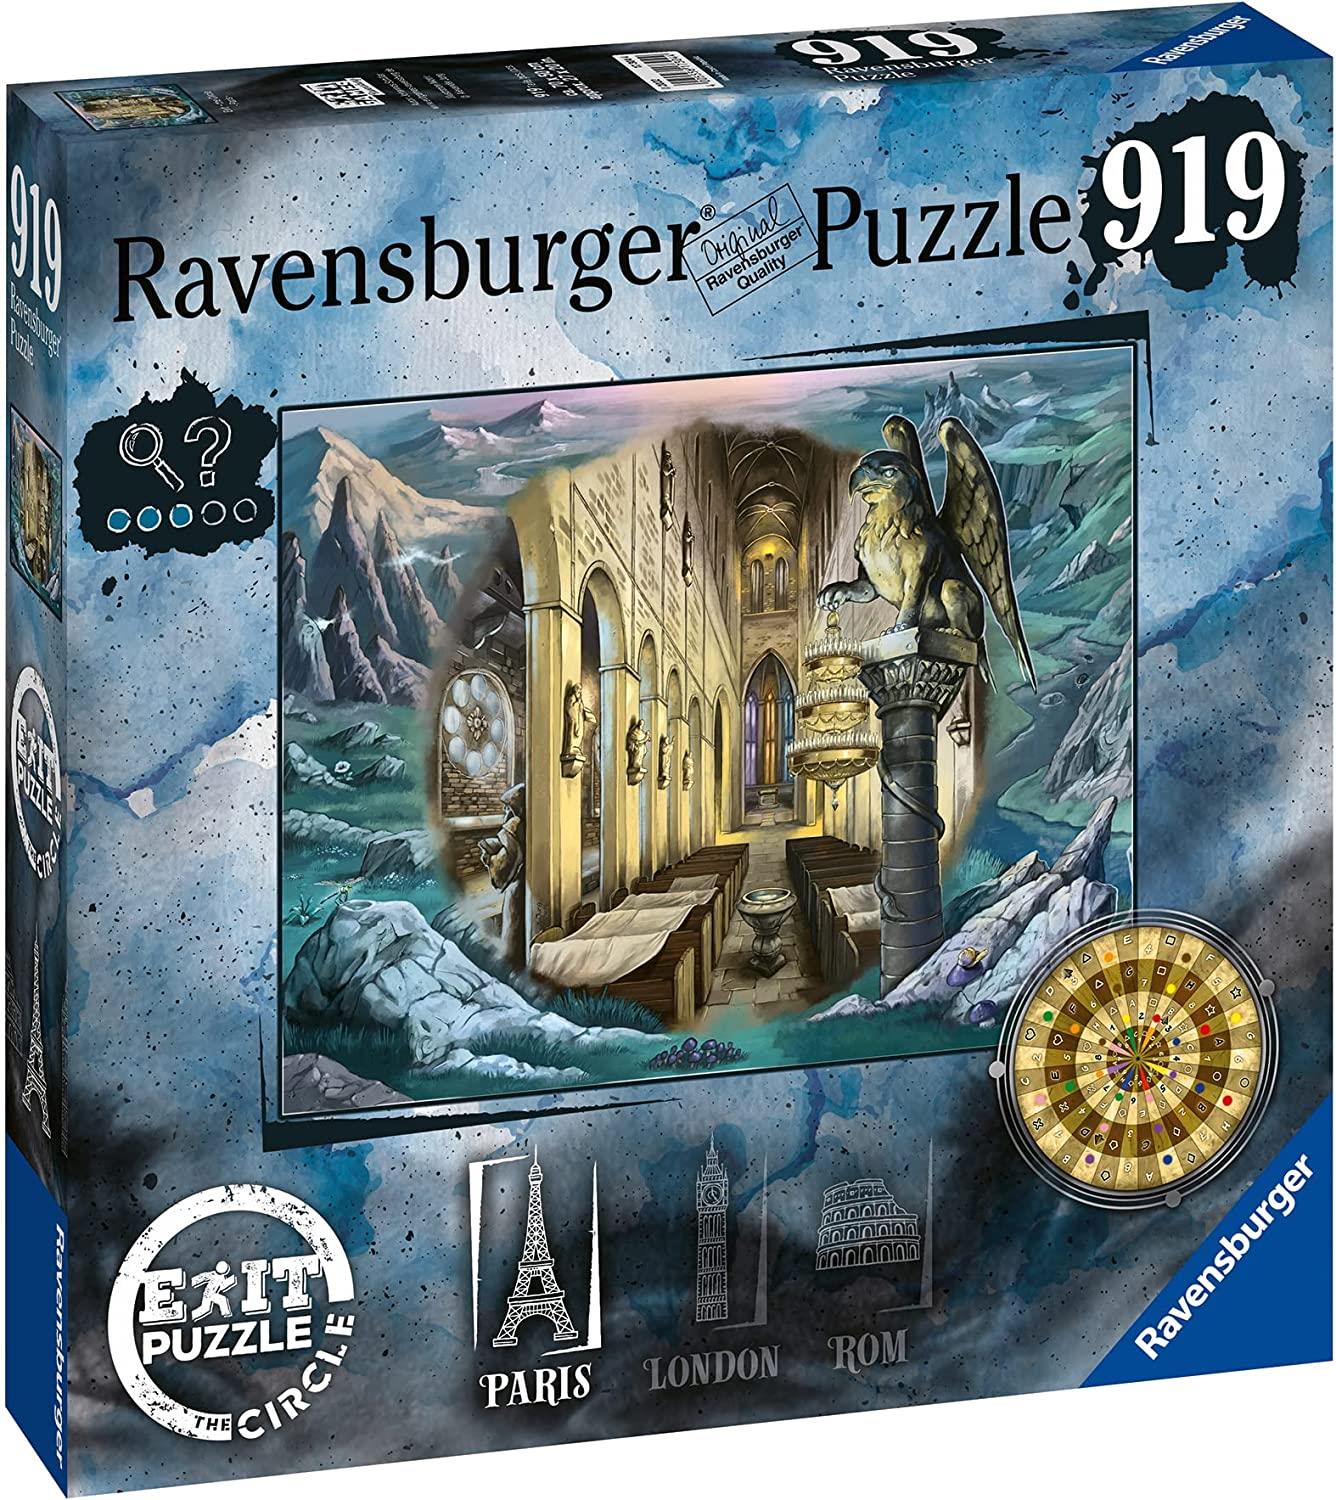 Ravensburger Exit the Circle - Paris Circular Jigsaw Puzzle (919 Pieces)